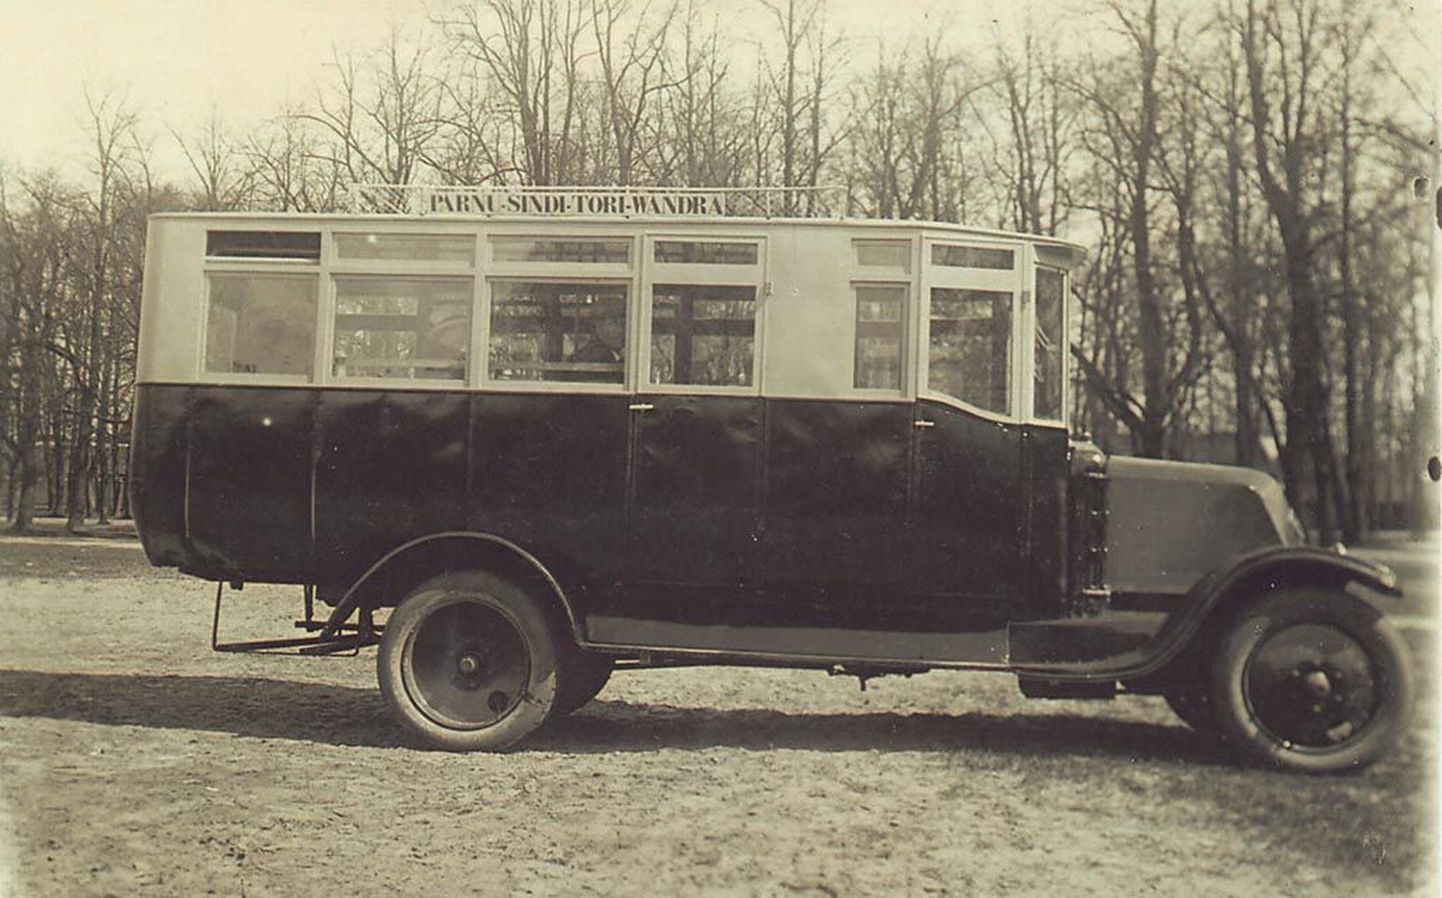 Alguses sõitis Pärnu-Sindi-Tori-Wändra liinil selline autobuss.